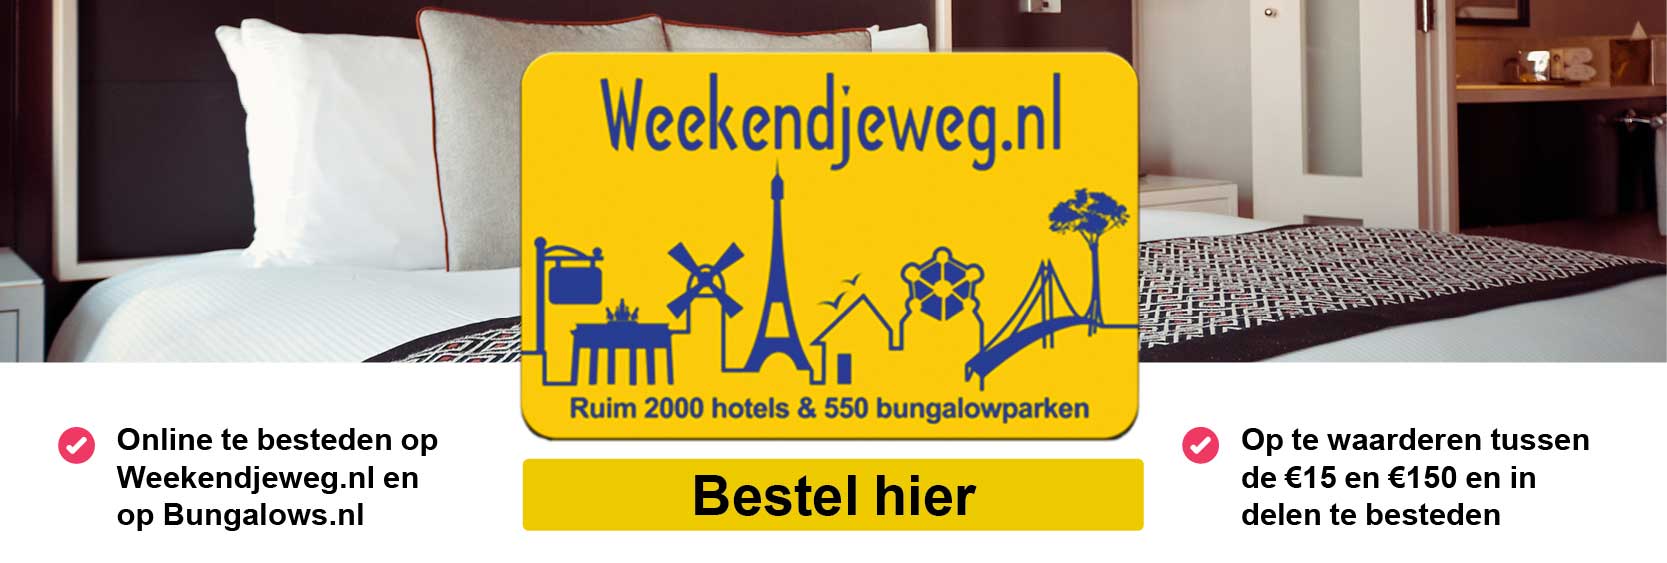 Weekendje_weg_banner_def